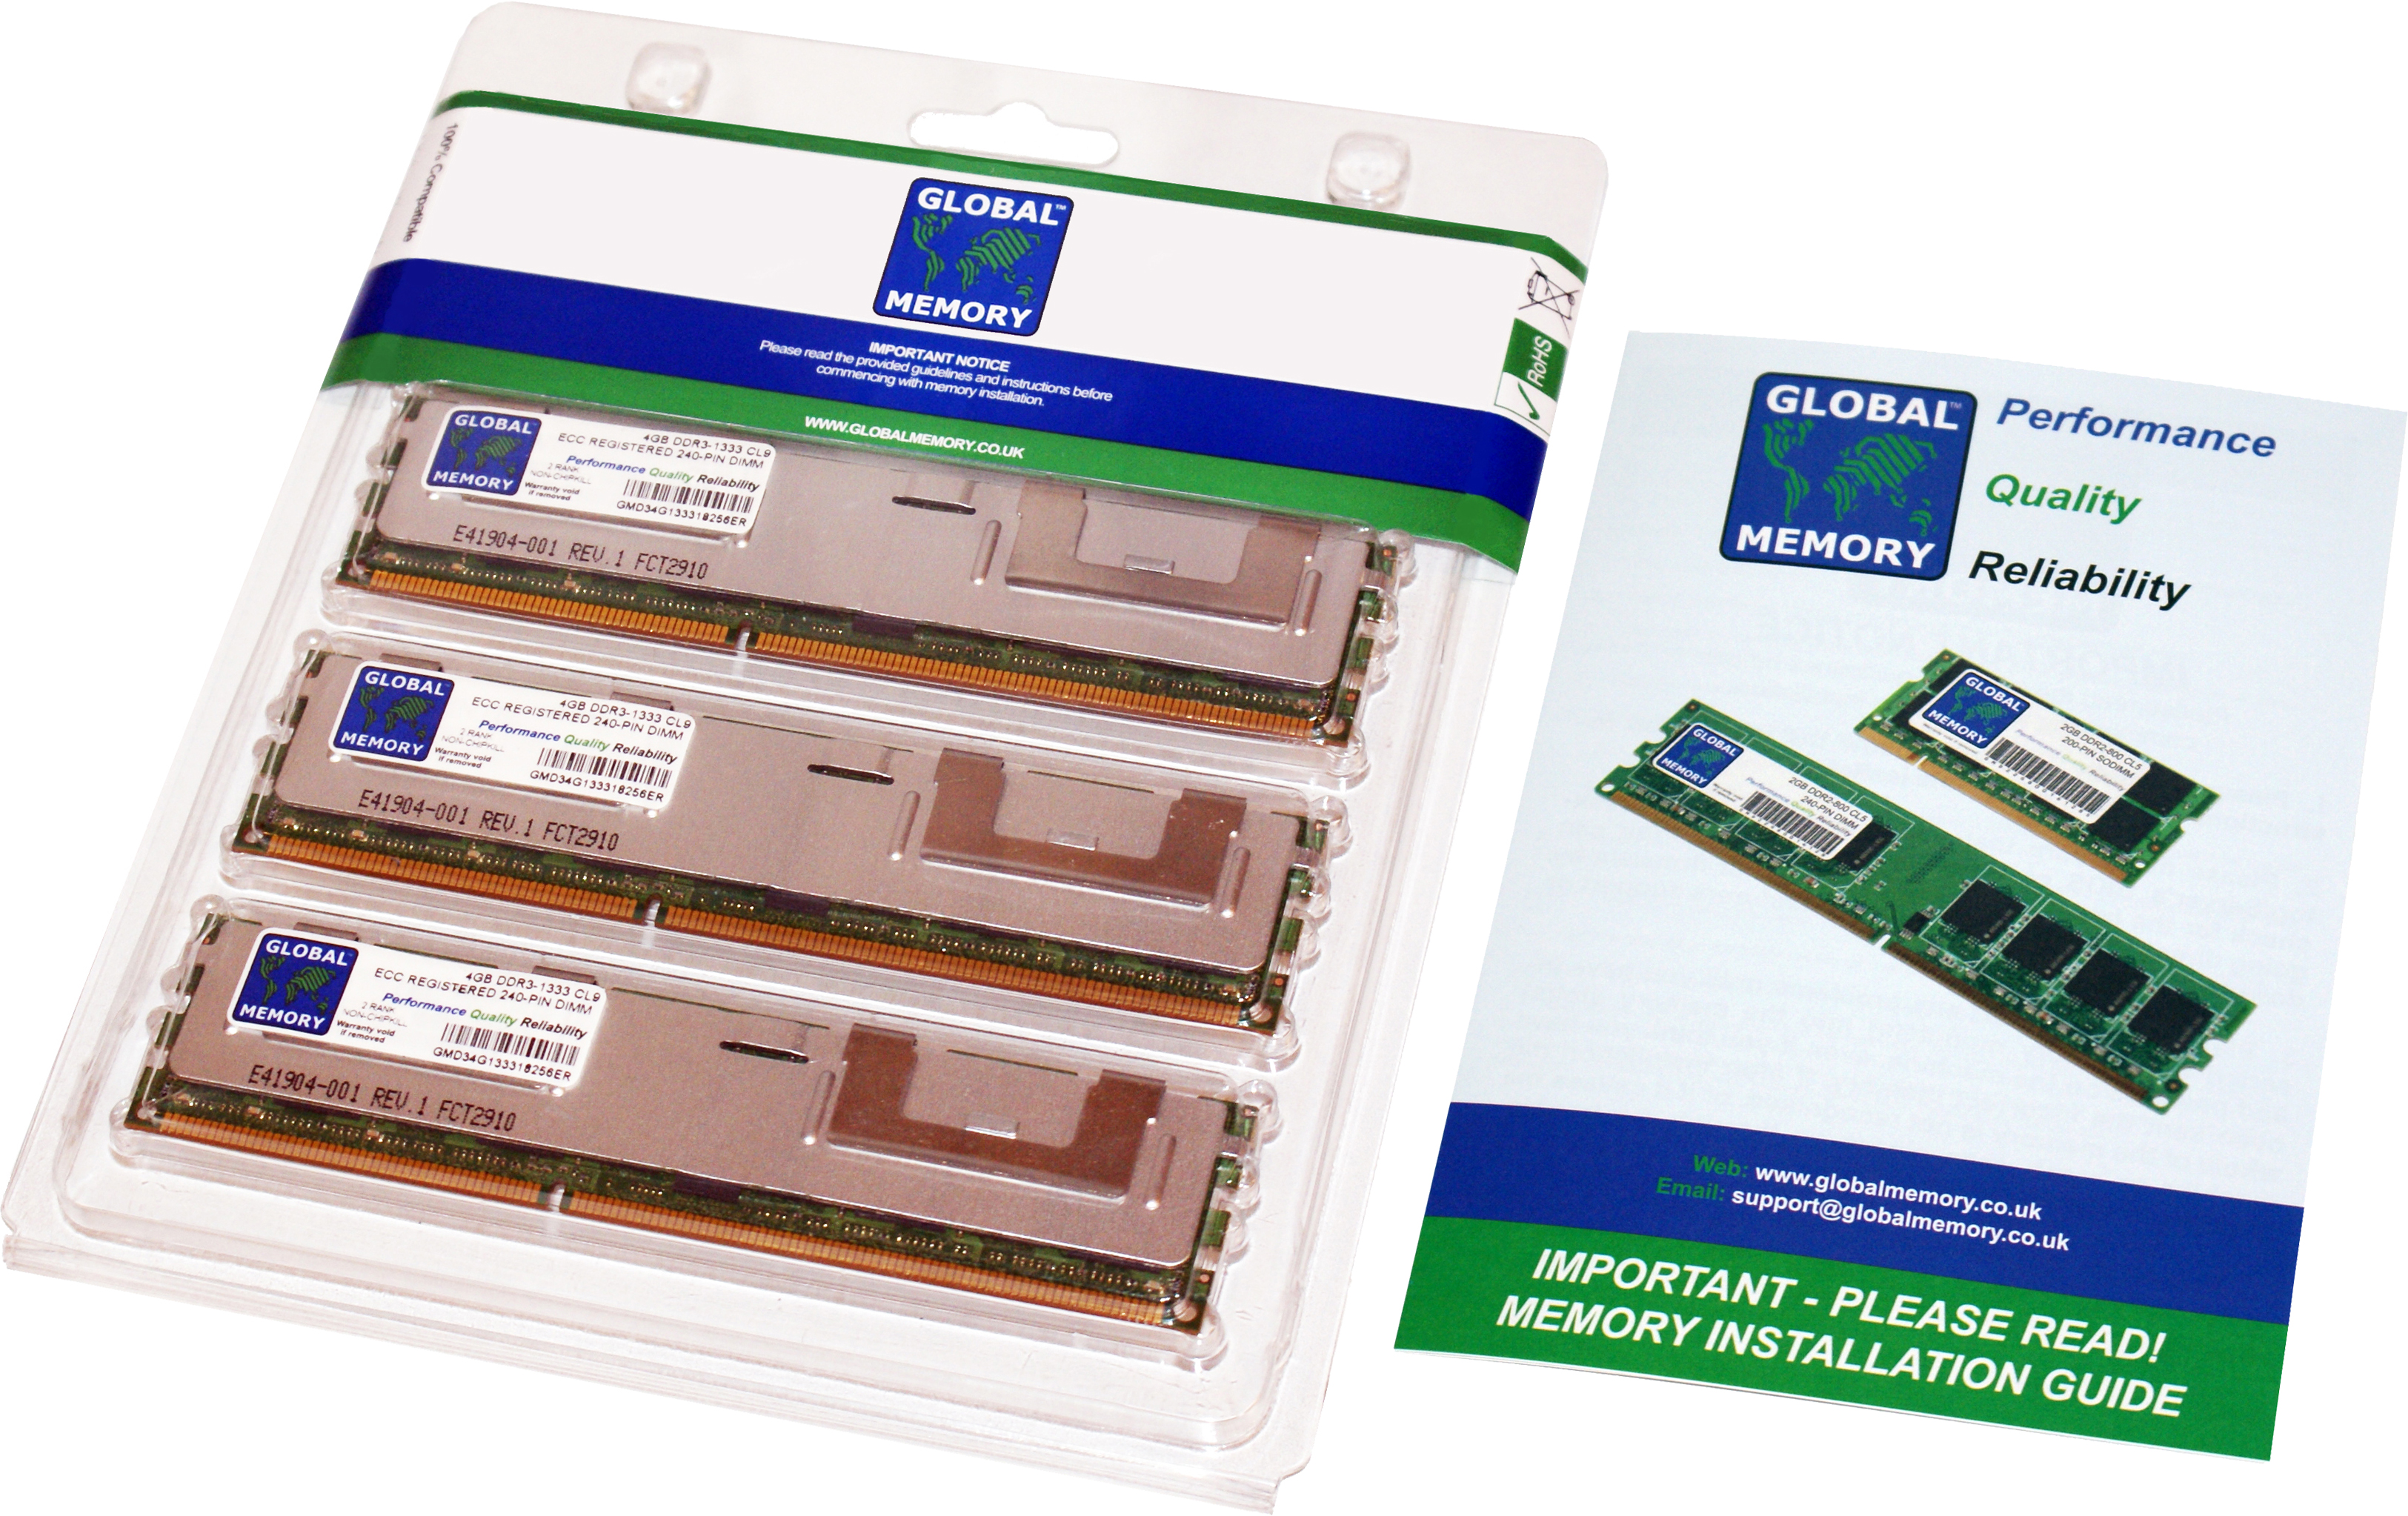 48GB (3 x 16GB) DDR3 1333MHz PC3-10600 240-PIN ECC REGISTERED DIMM (RDIMM) MEMORY RAM KIT FOR HEWLETT-PACKARD SERVERS/WORKSTATIONS (12 RANK KIT NON-CHIPKILL)